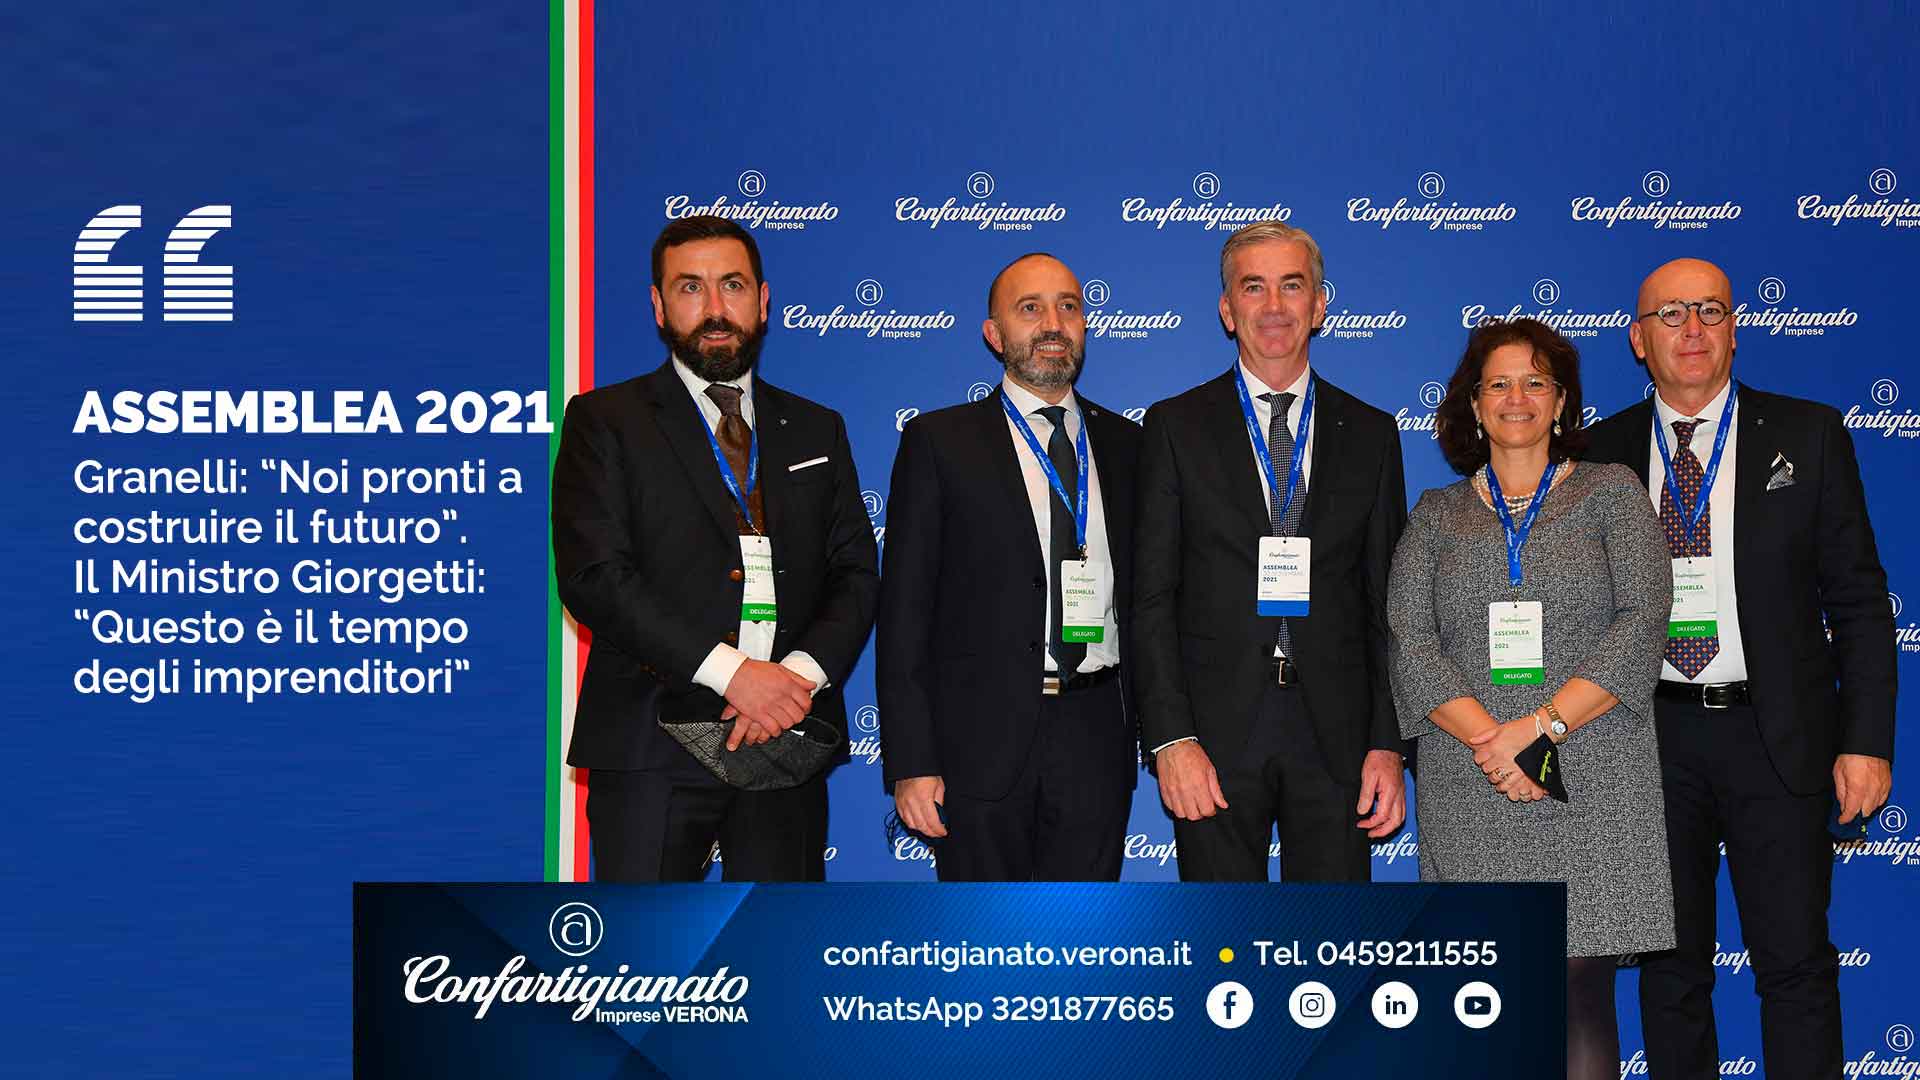 ASSEMBLEA 2021 – Granelli: "Noi pronti a costruire il futuro". Il Ministro Giorgetti: “Questo è il tempo degli imprenditori"